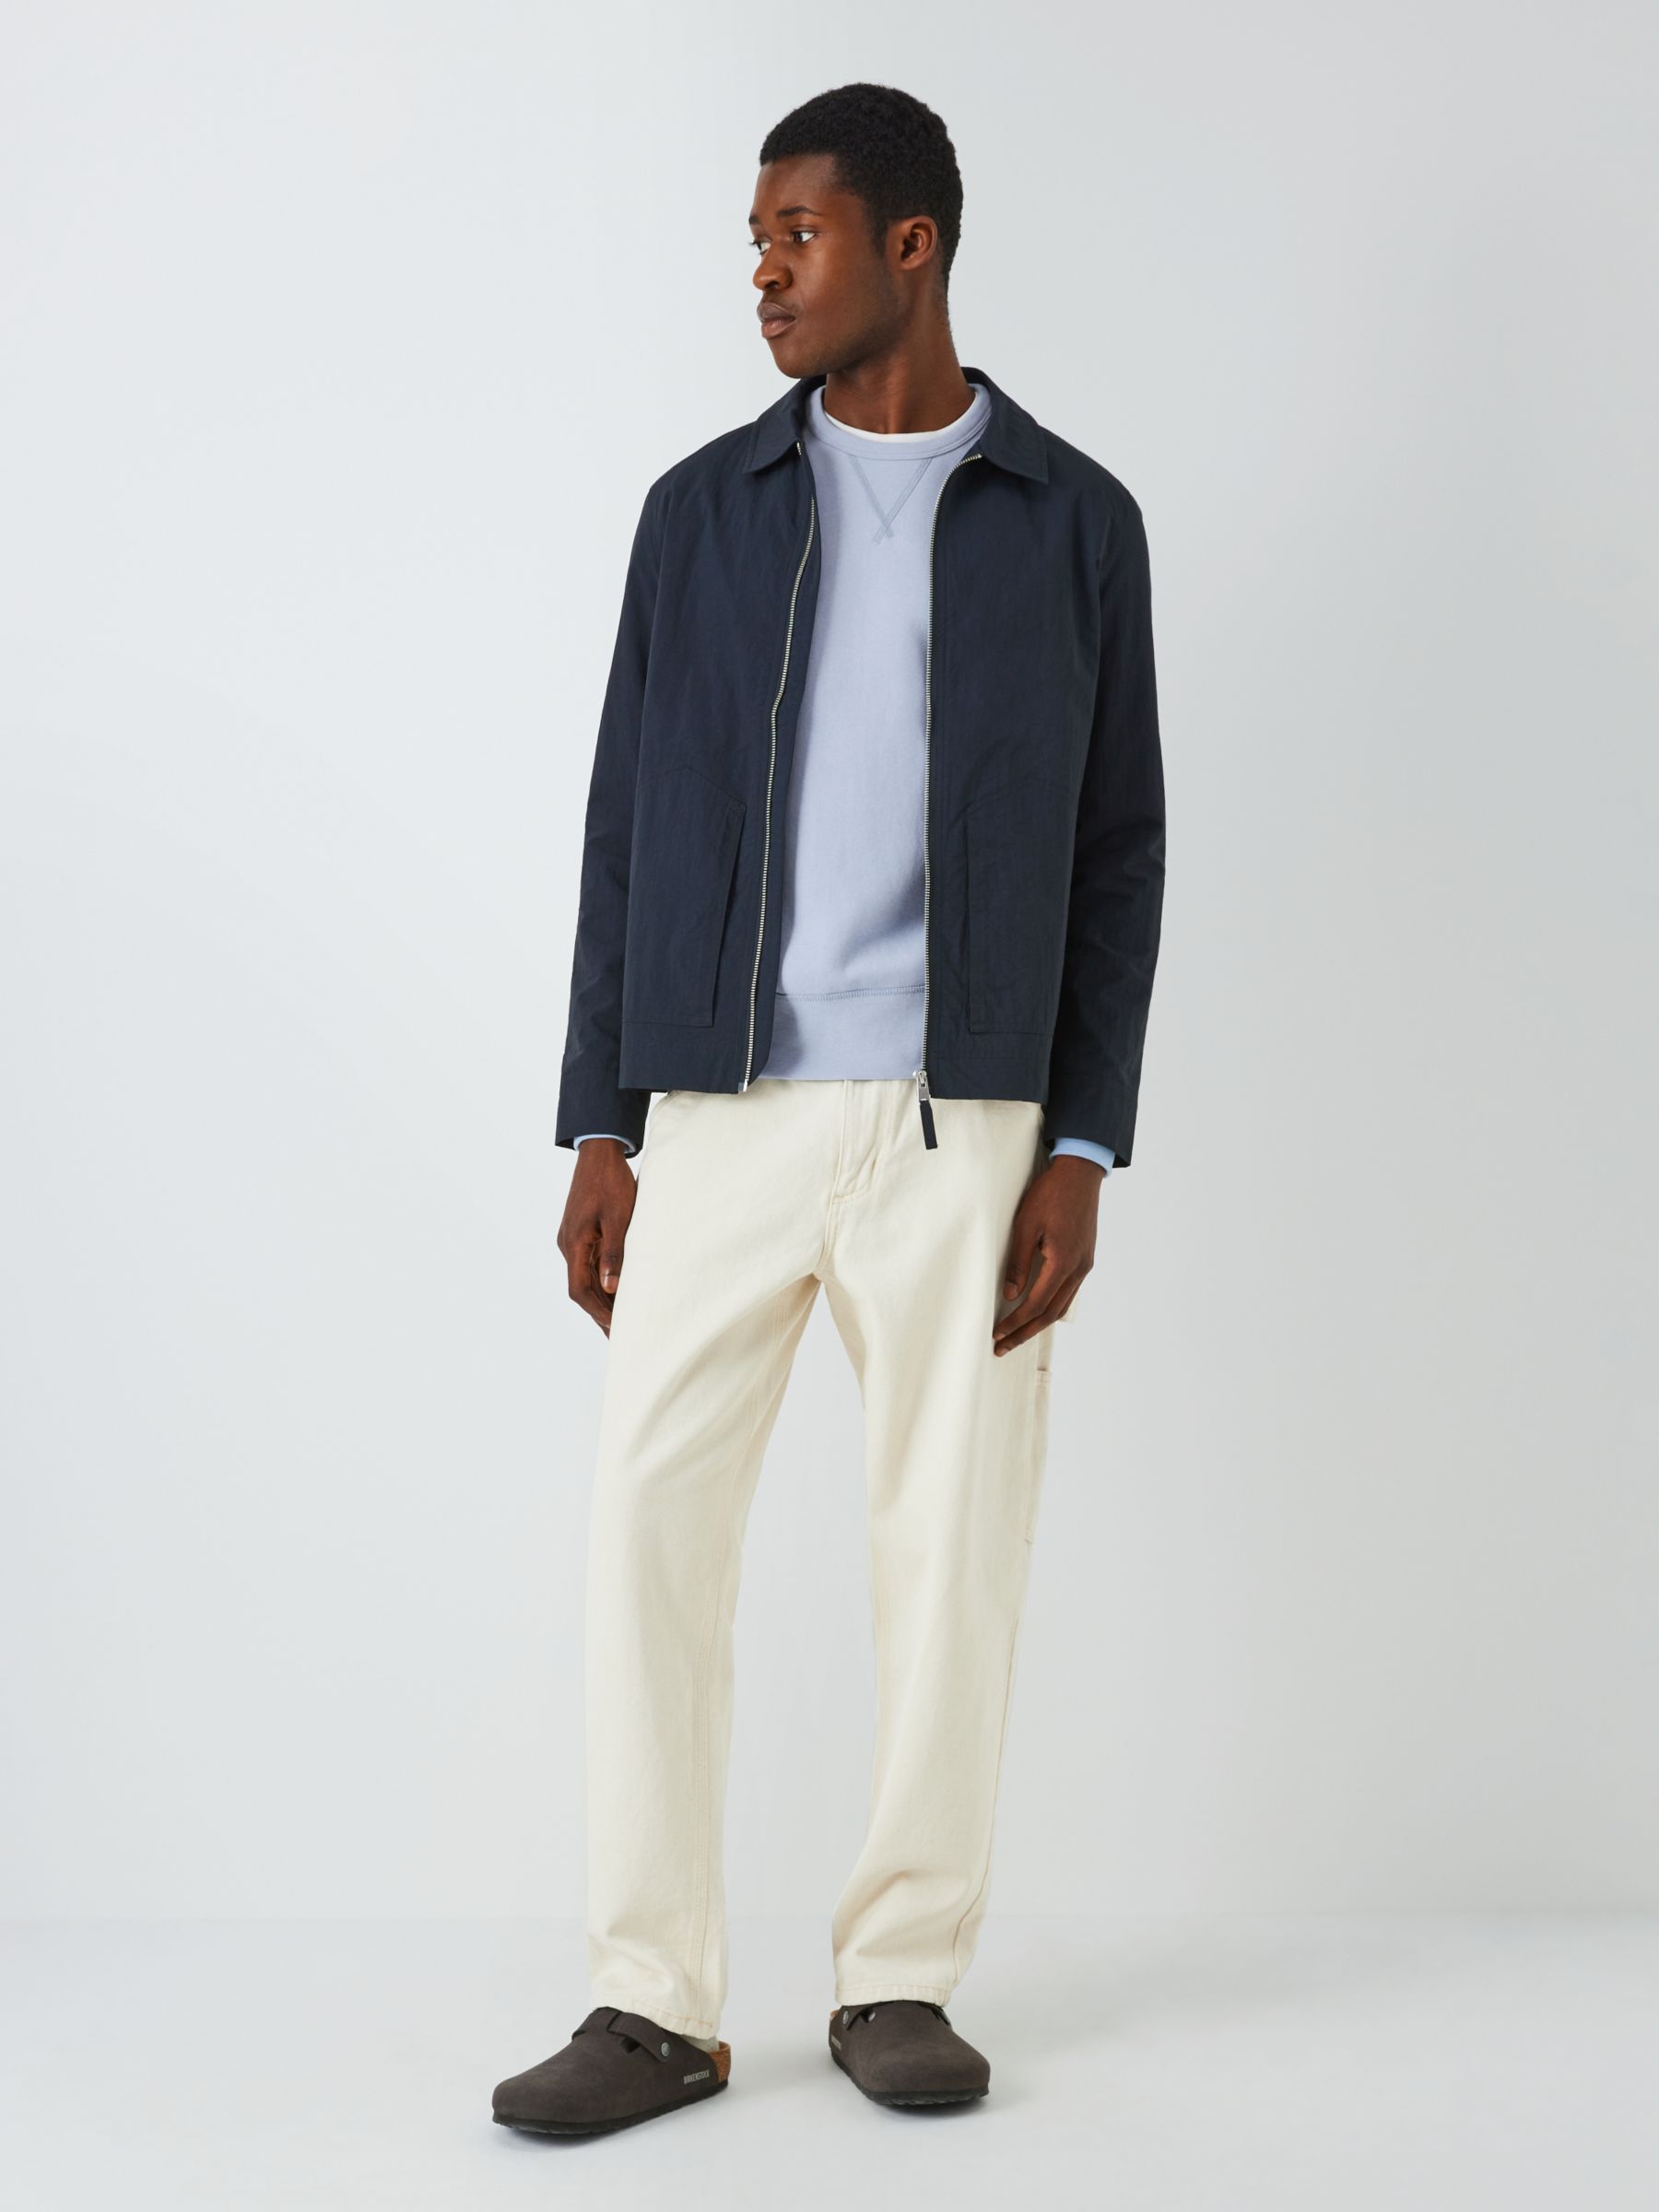 Polo Ralph Lauren Long Sleeve Sweatshirt